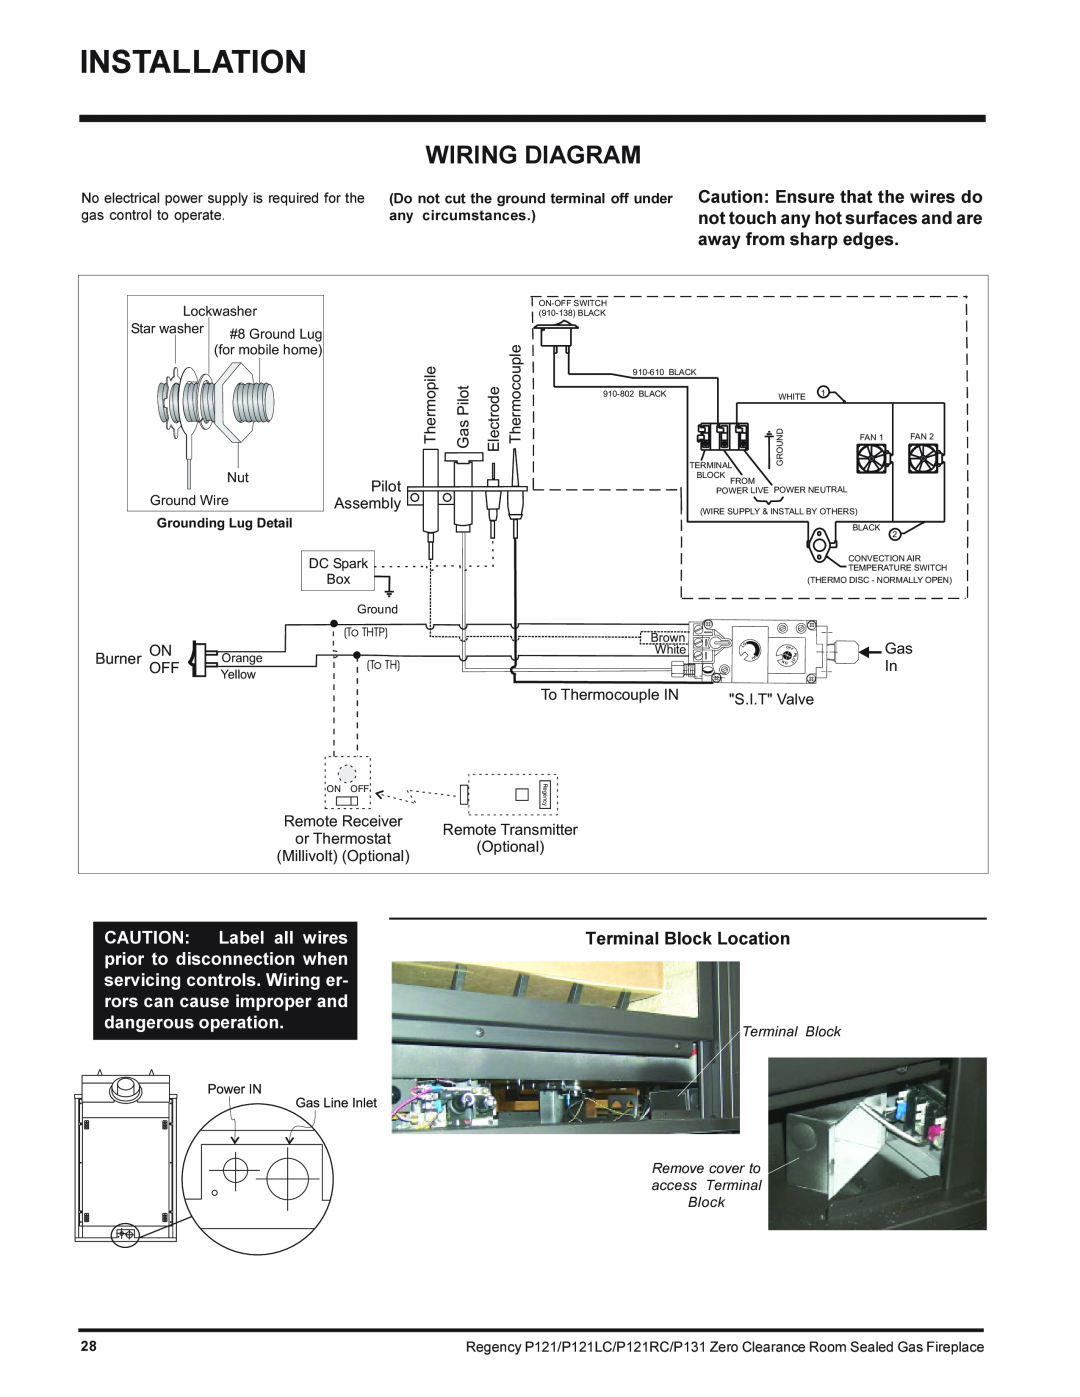 Regency P131-NG, P121LC-NG, P121RC-NG, P121-NG installation manual Wiring Diagram, Terminal Block Location 